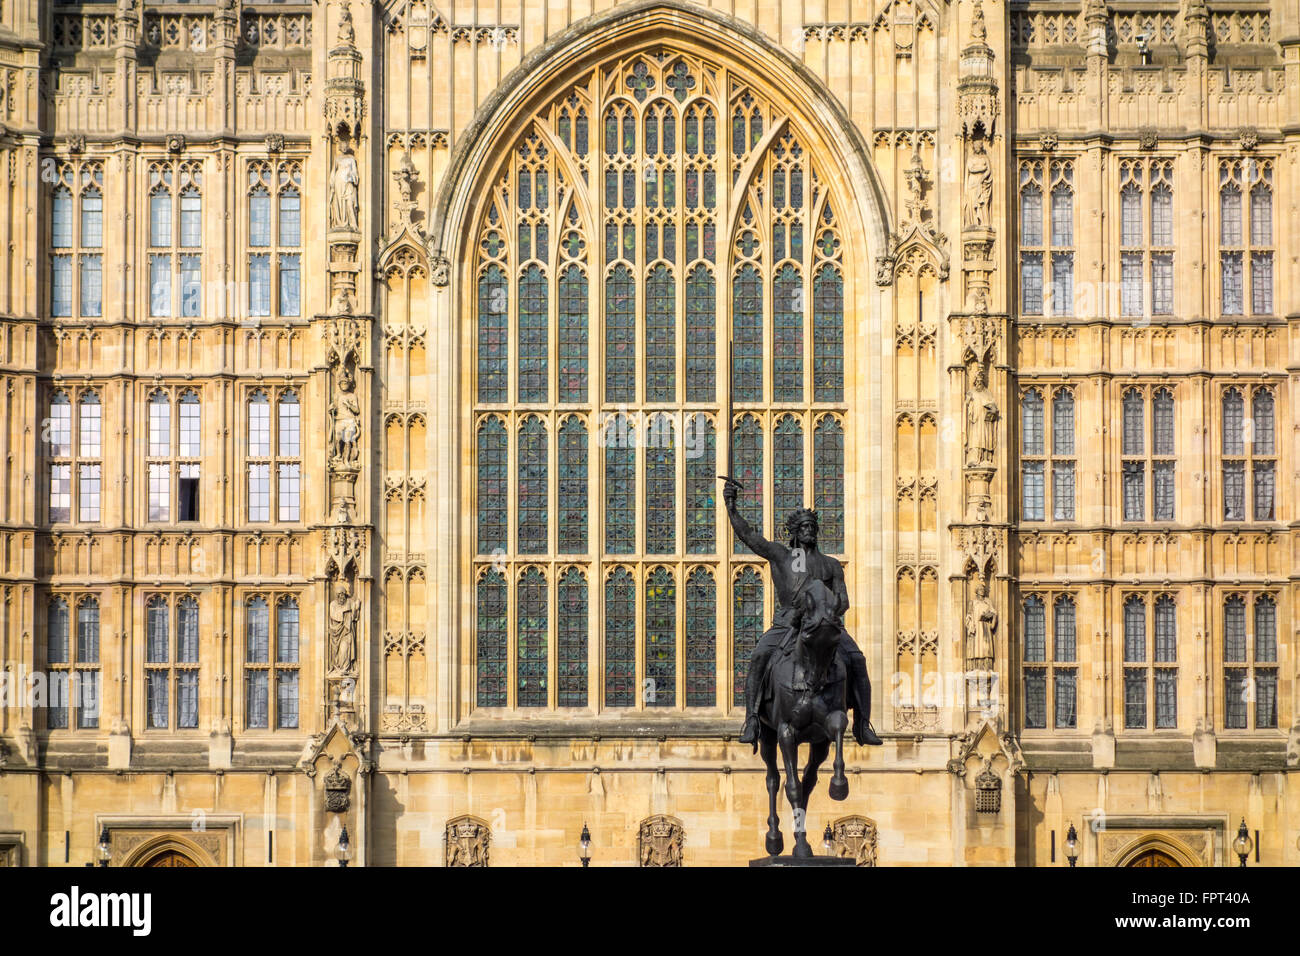 Statua di Richard Coeur de Lion Riccardo Cuor di Leone da Carlo Marochetti, Palazzo di Westminster, Londra, Regno Unito Foto Stock